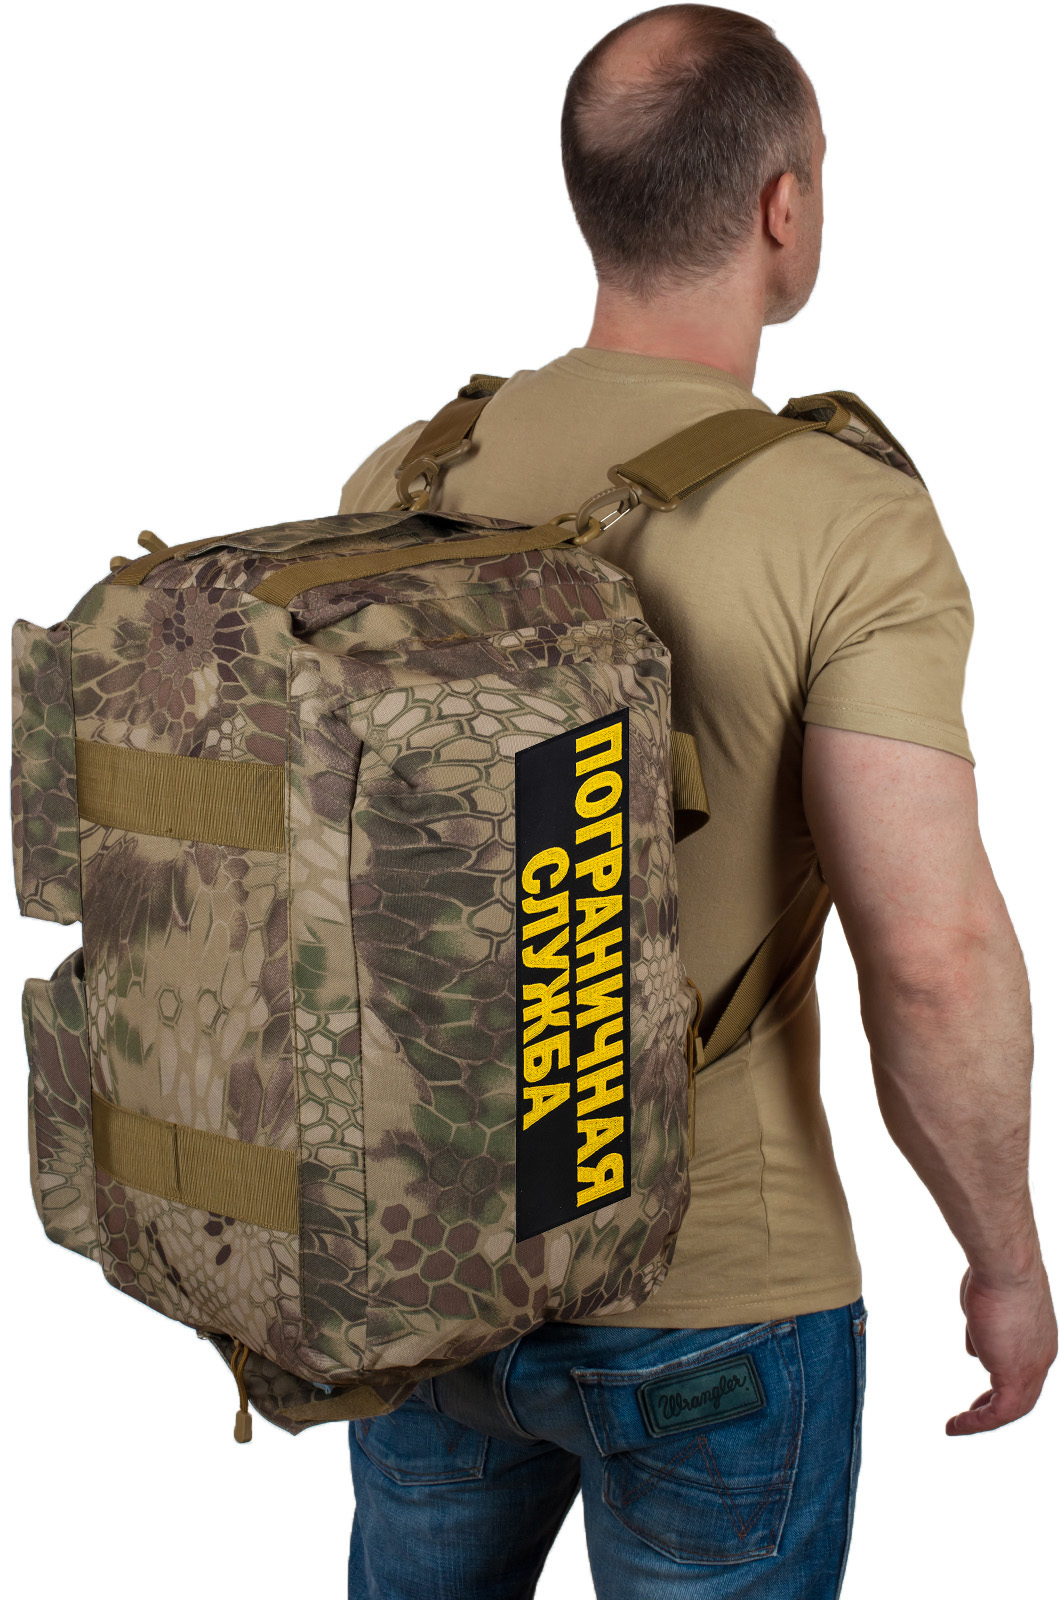 Камуфляжная сумка для походов Пограничная Служба 